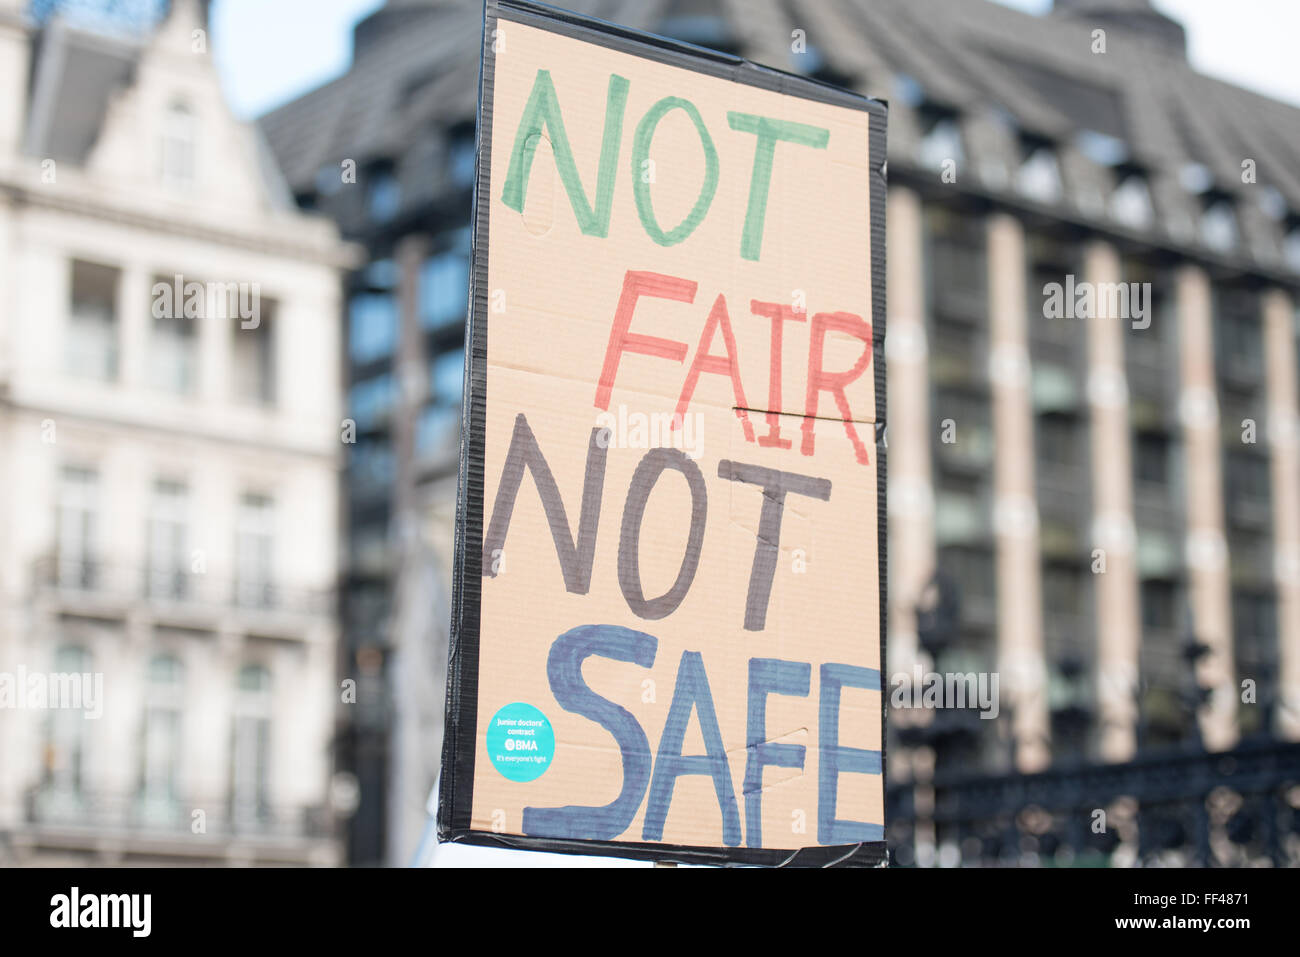 Londres, Reino Unido. El 10 de febrero, 2016. Los médicos jóvenes banner - no es justo no seguro de crédito: Ian Davidson/Alamy Live News Foto de stock